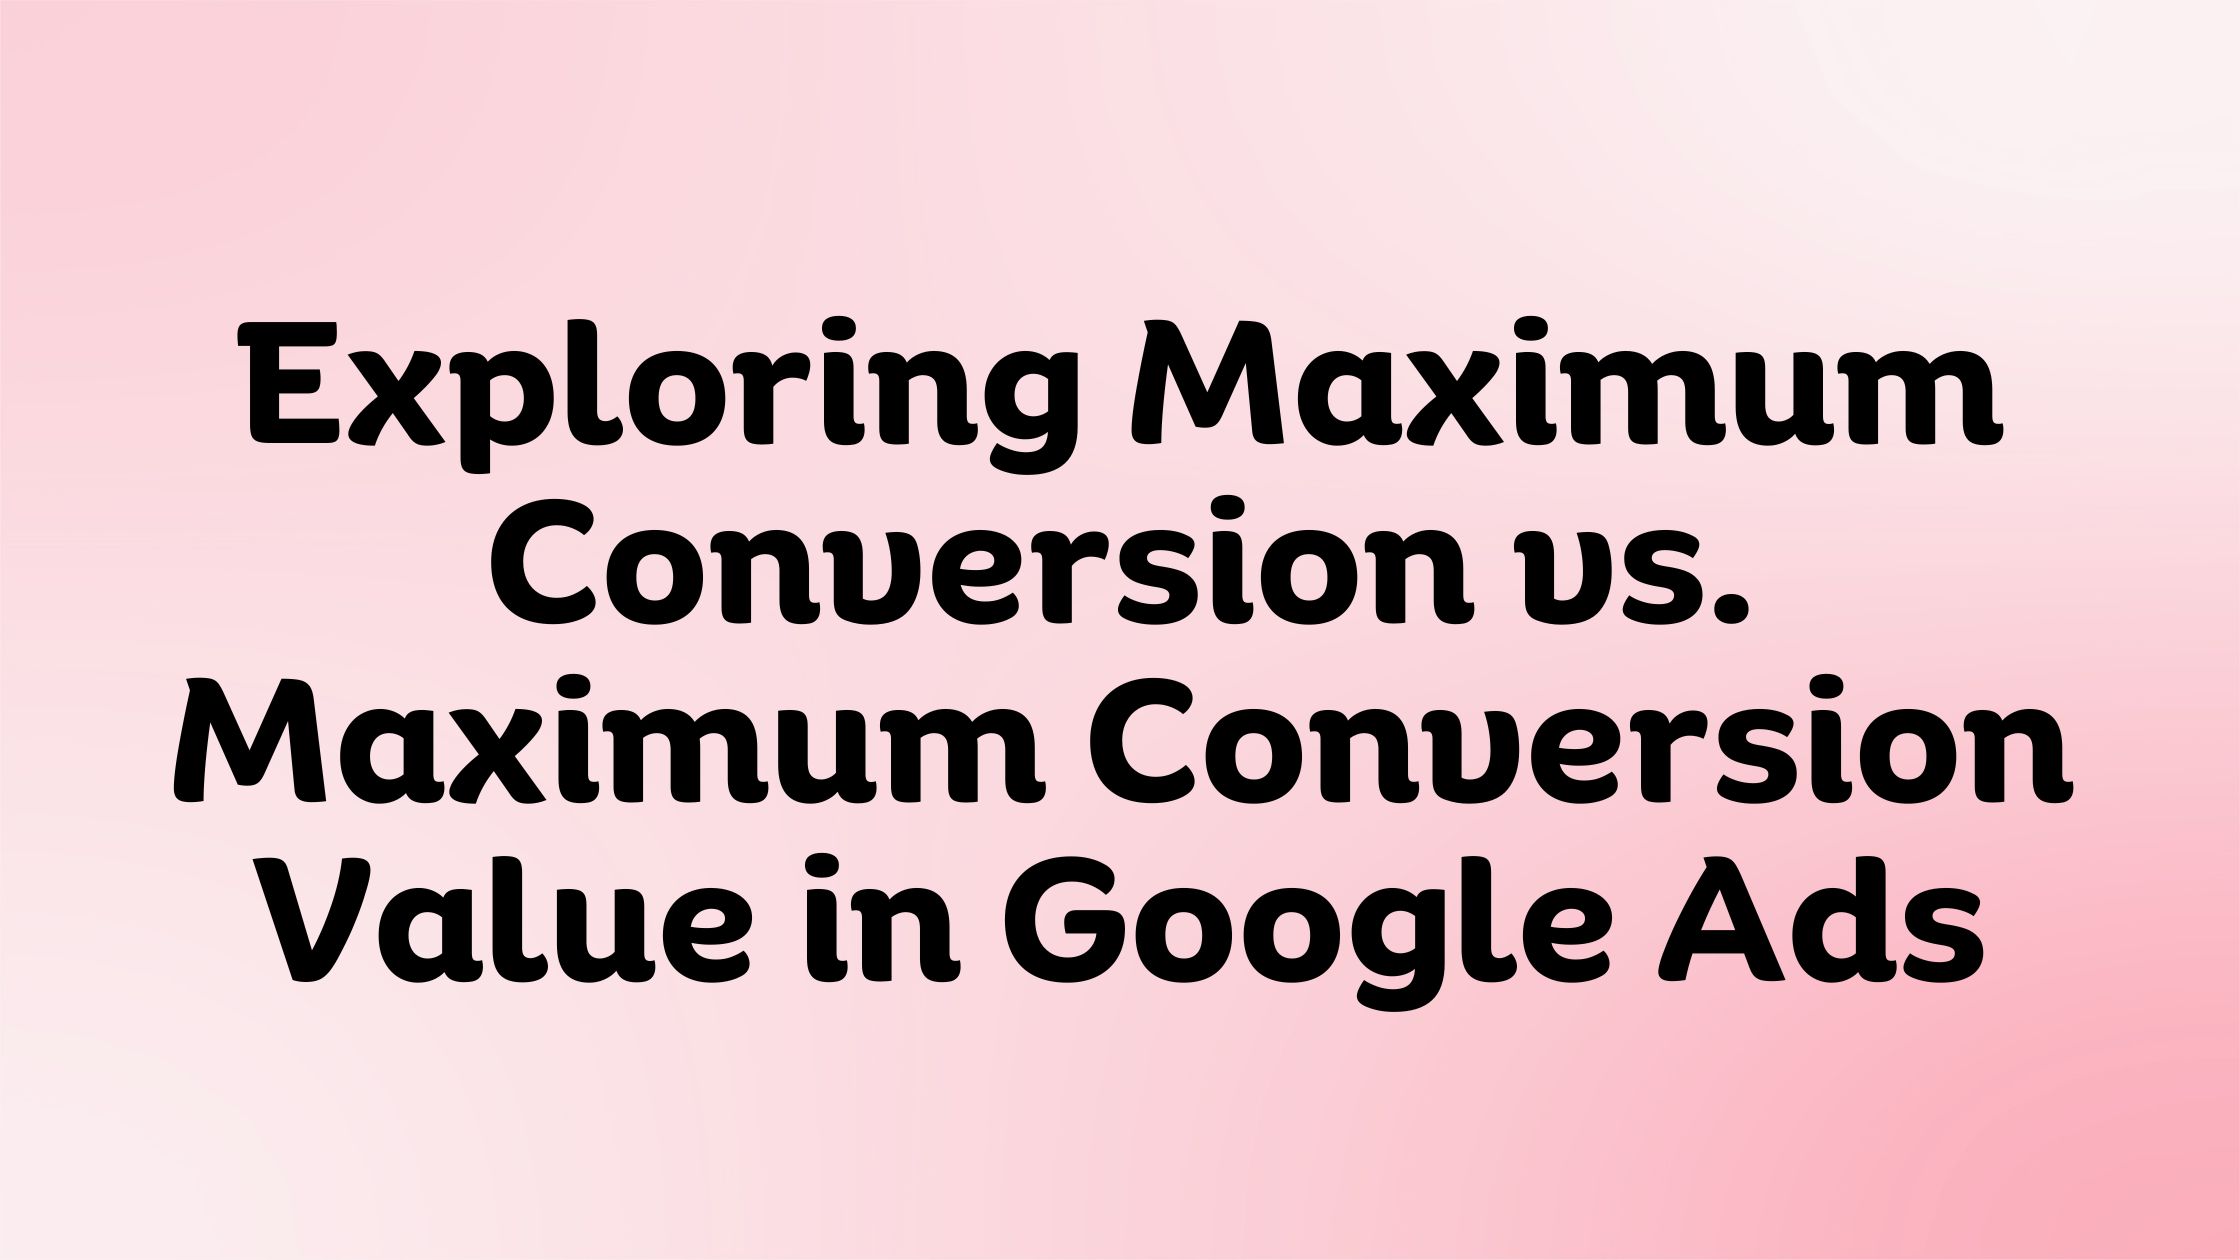 Maximum Conversion vs. Maximum Conversion Value in Google Ads